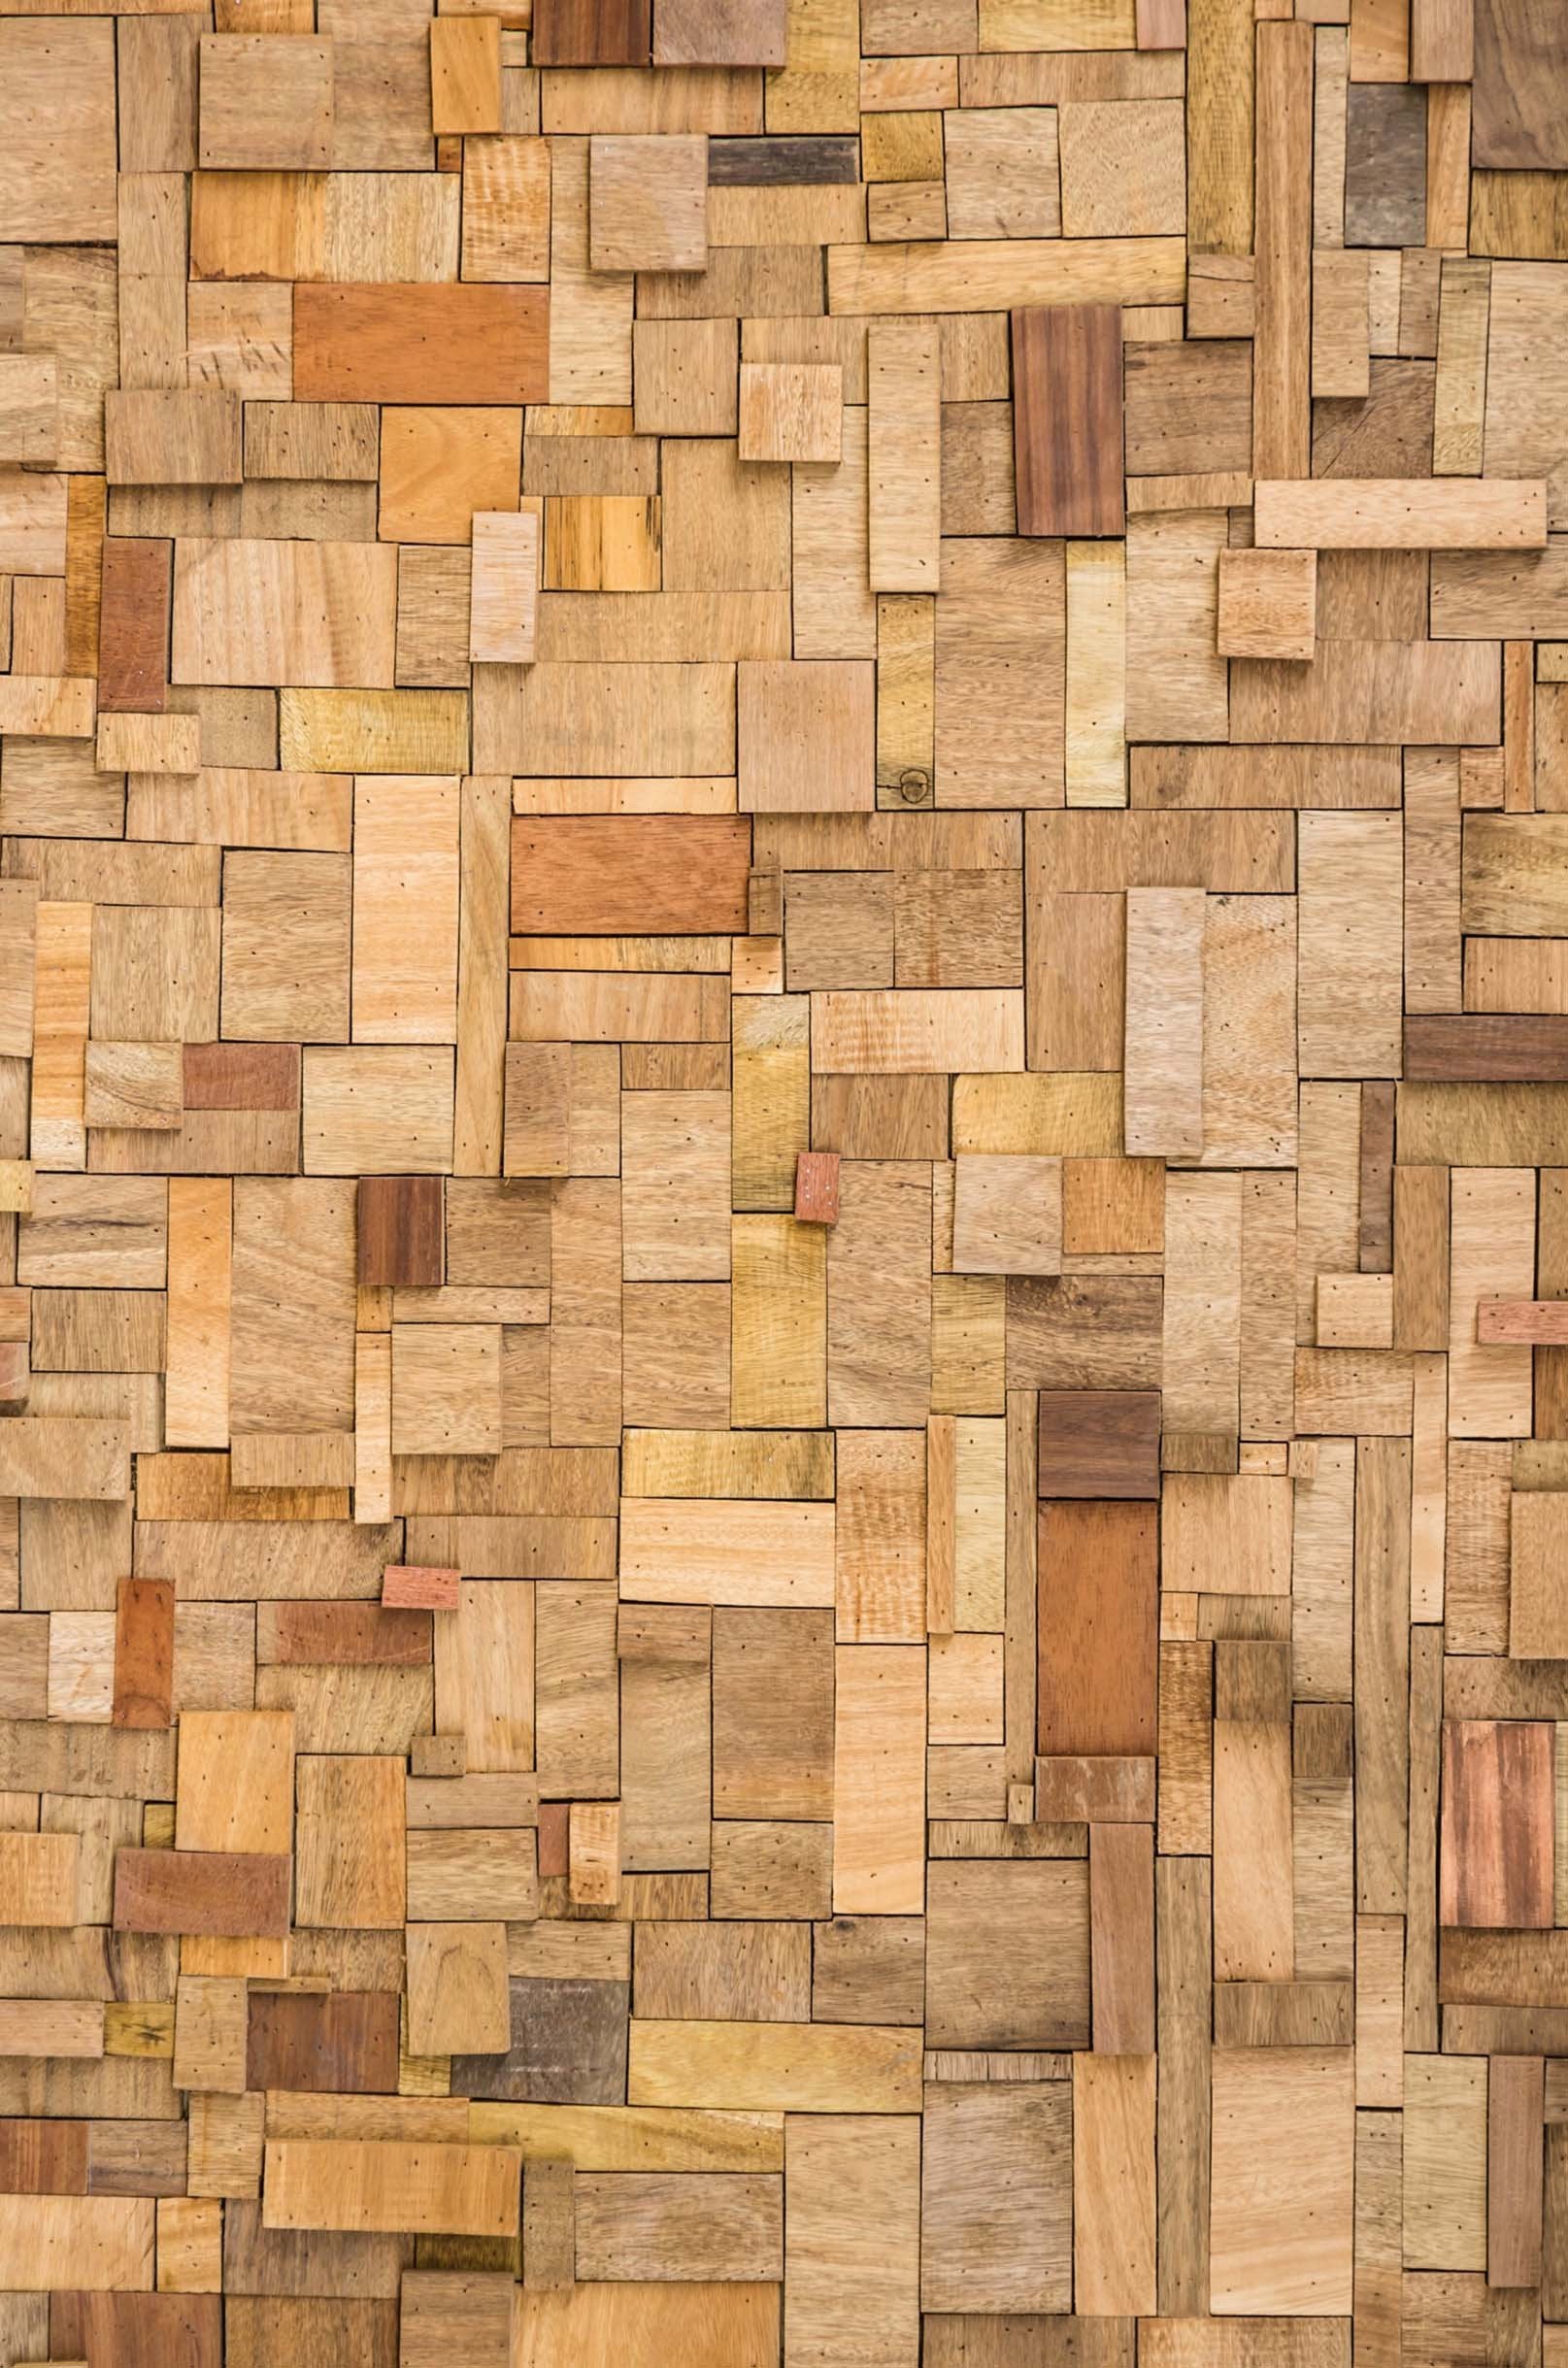 3D Wooden Cubes 1135 Stair Risers Wallpaper AJ Wallpaper 